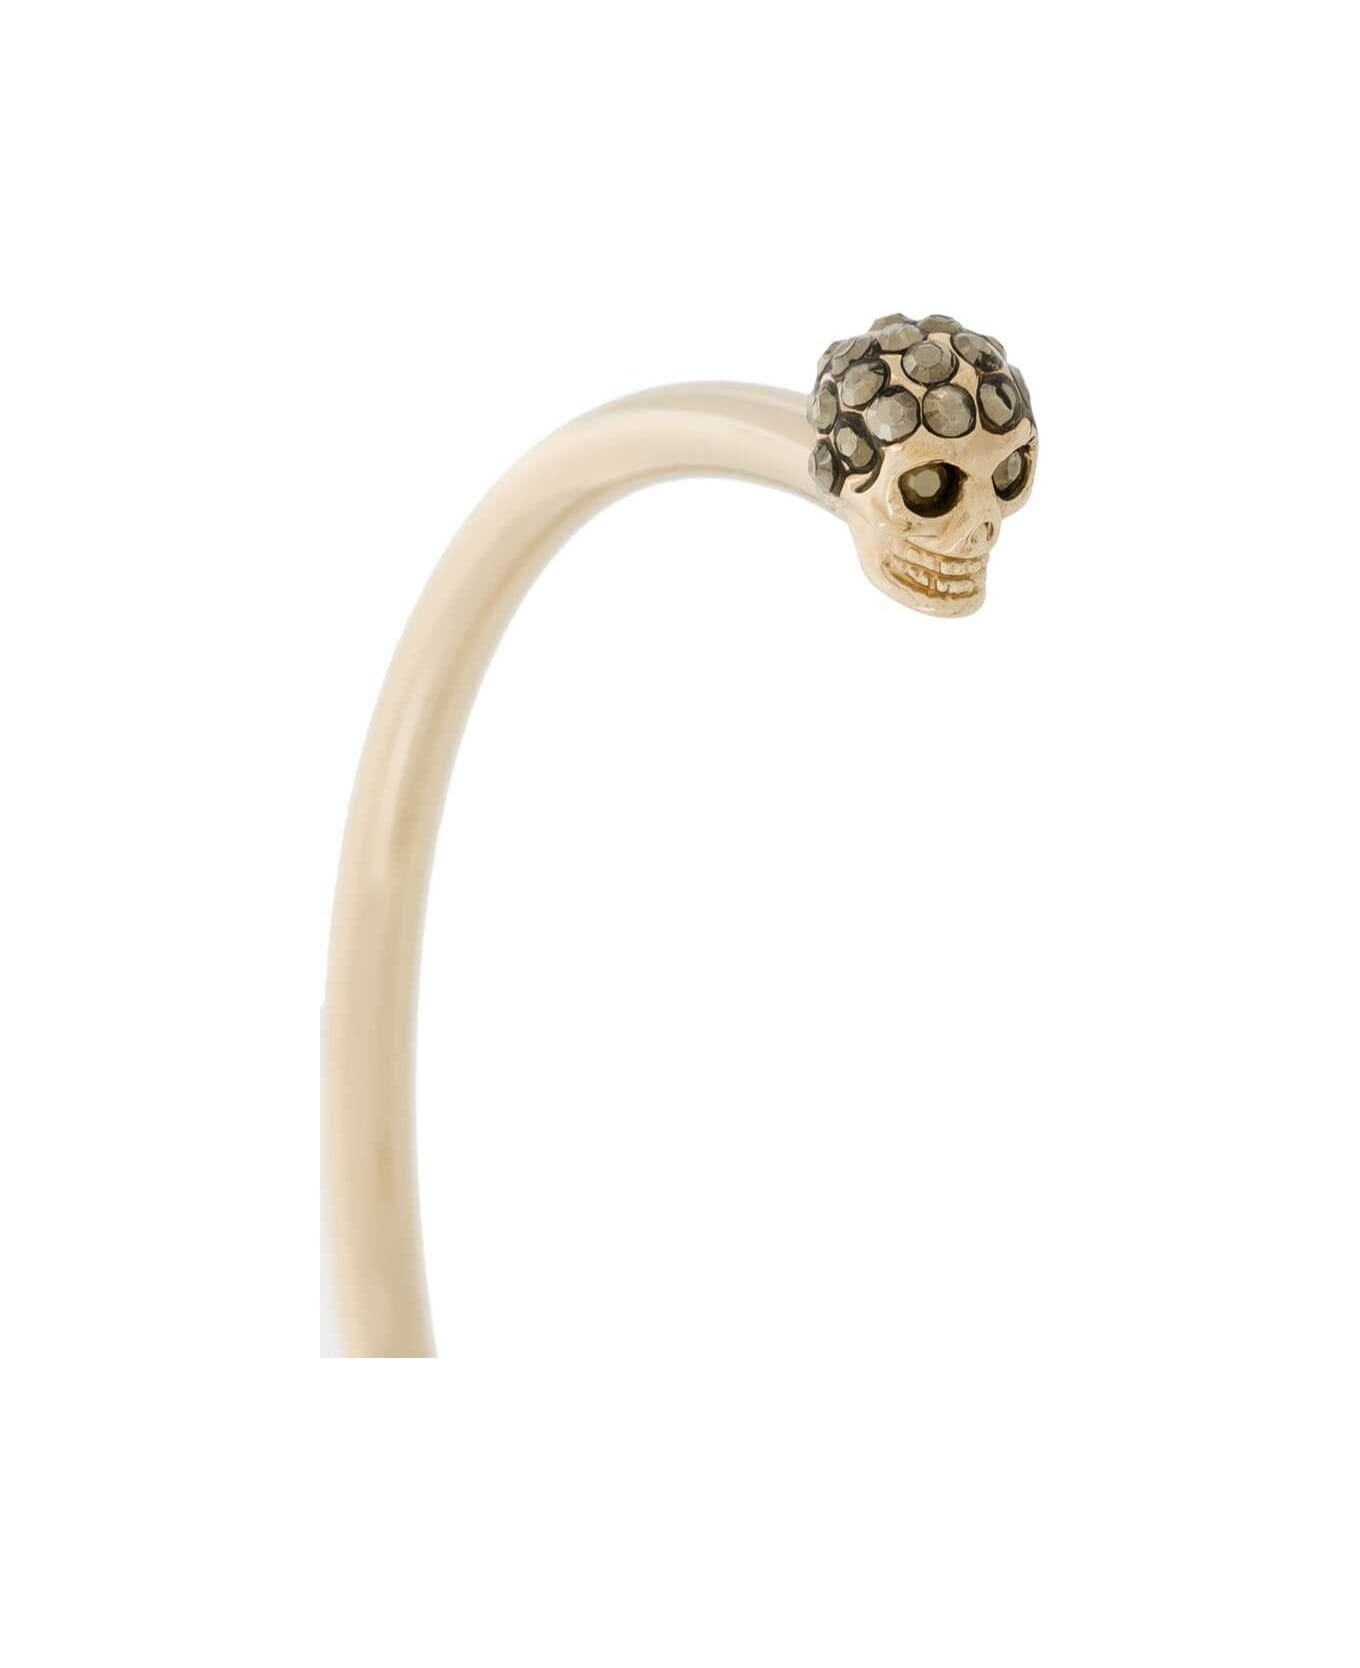 Alexander McQueen Woman's Skull Brass Bracelet - Metallic